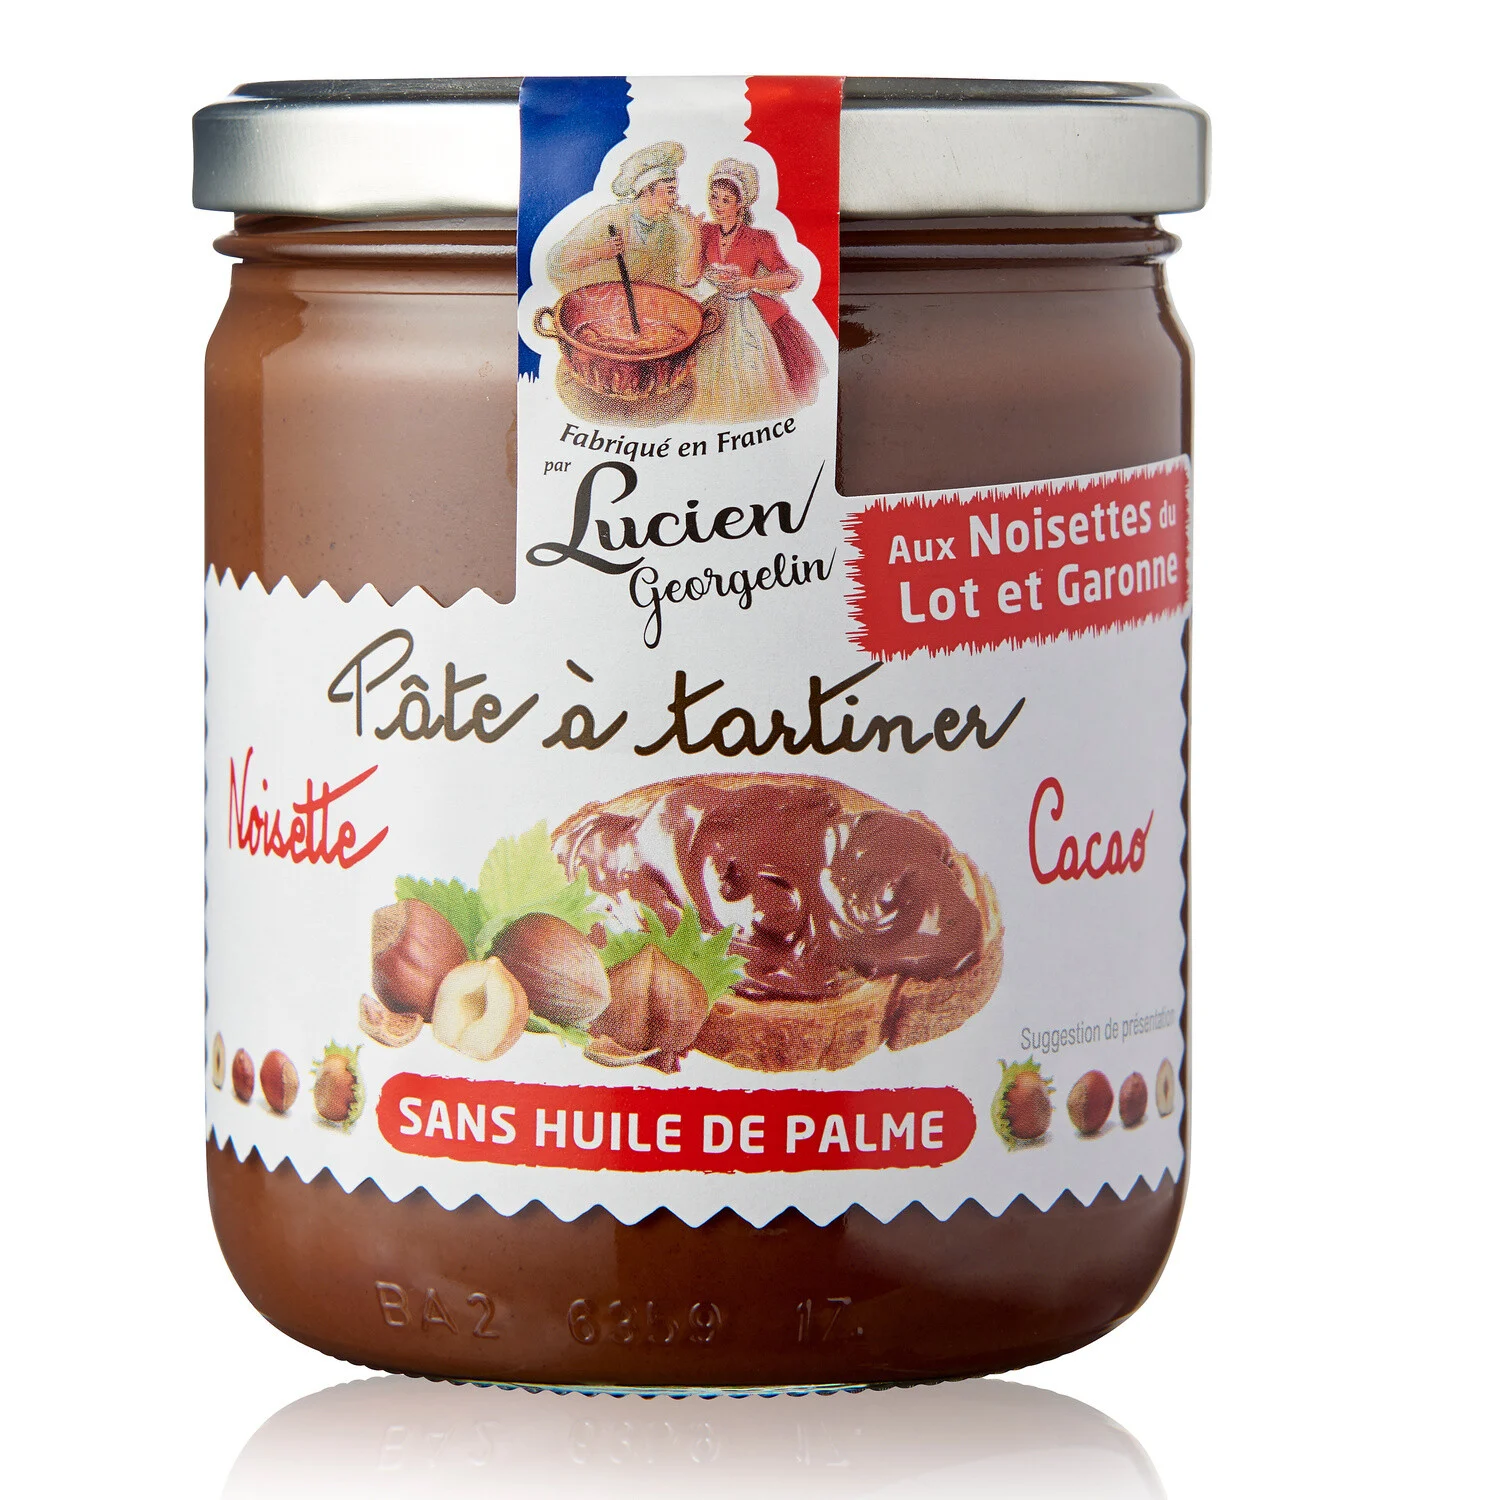 Crema Di Nocciole Del Lot Et Garonne E Cacao
Senza Olio di Palma 400g - LUCIEN GEORGELIN